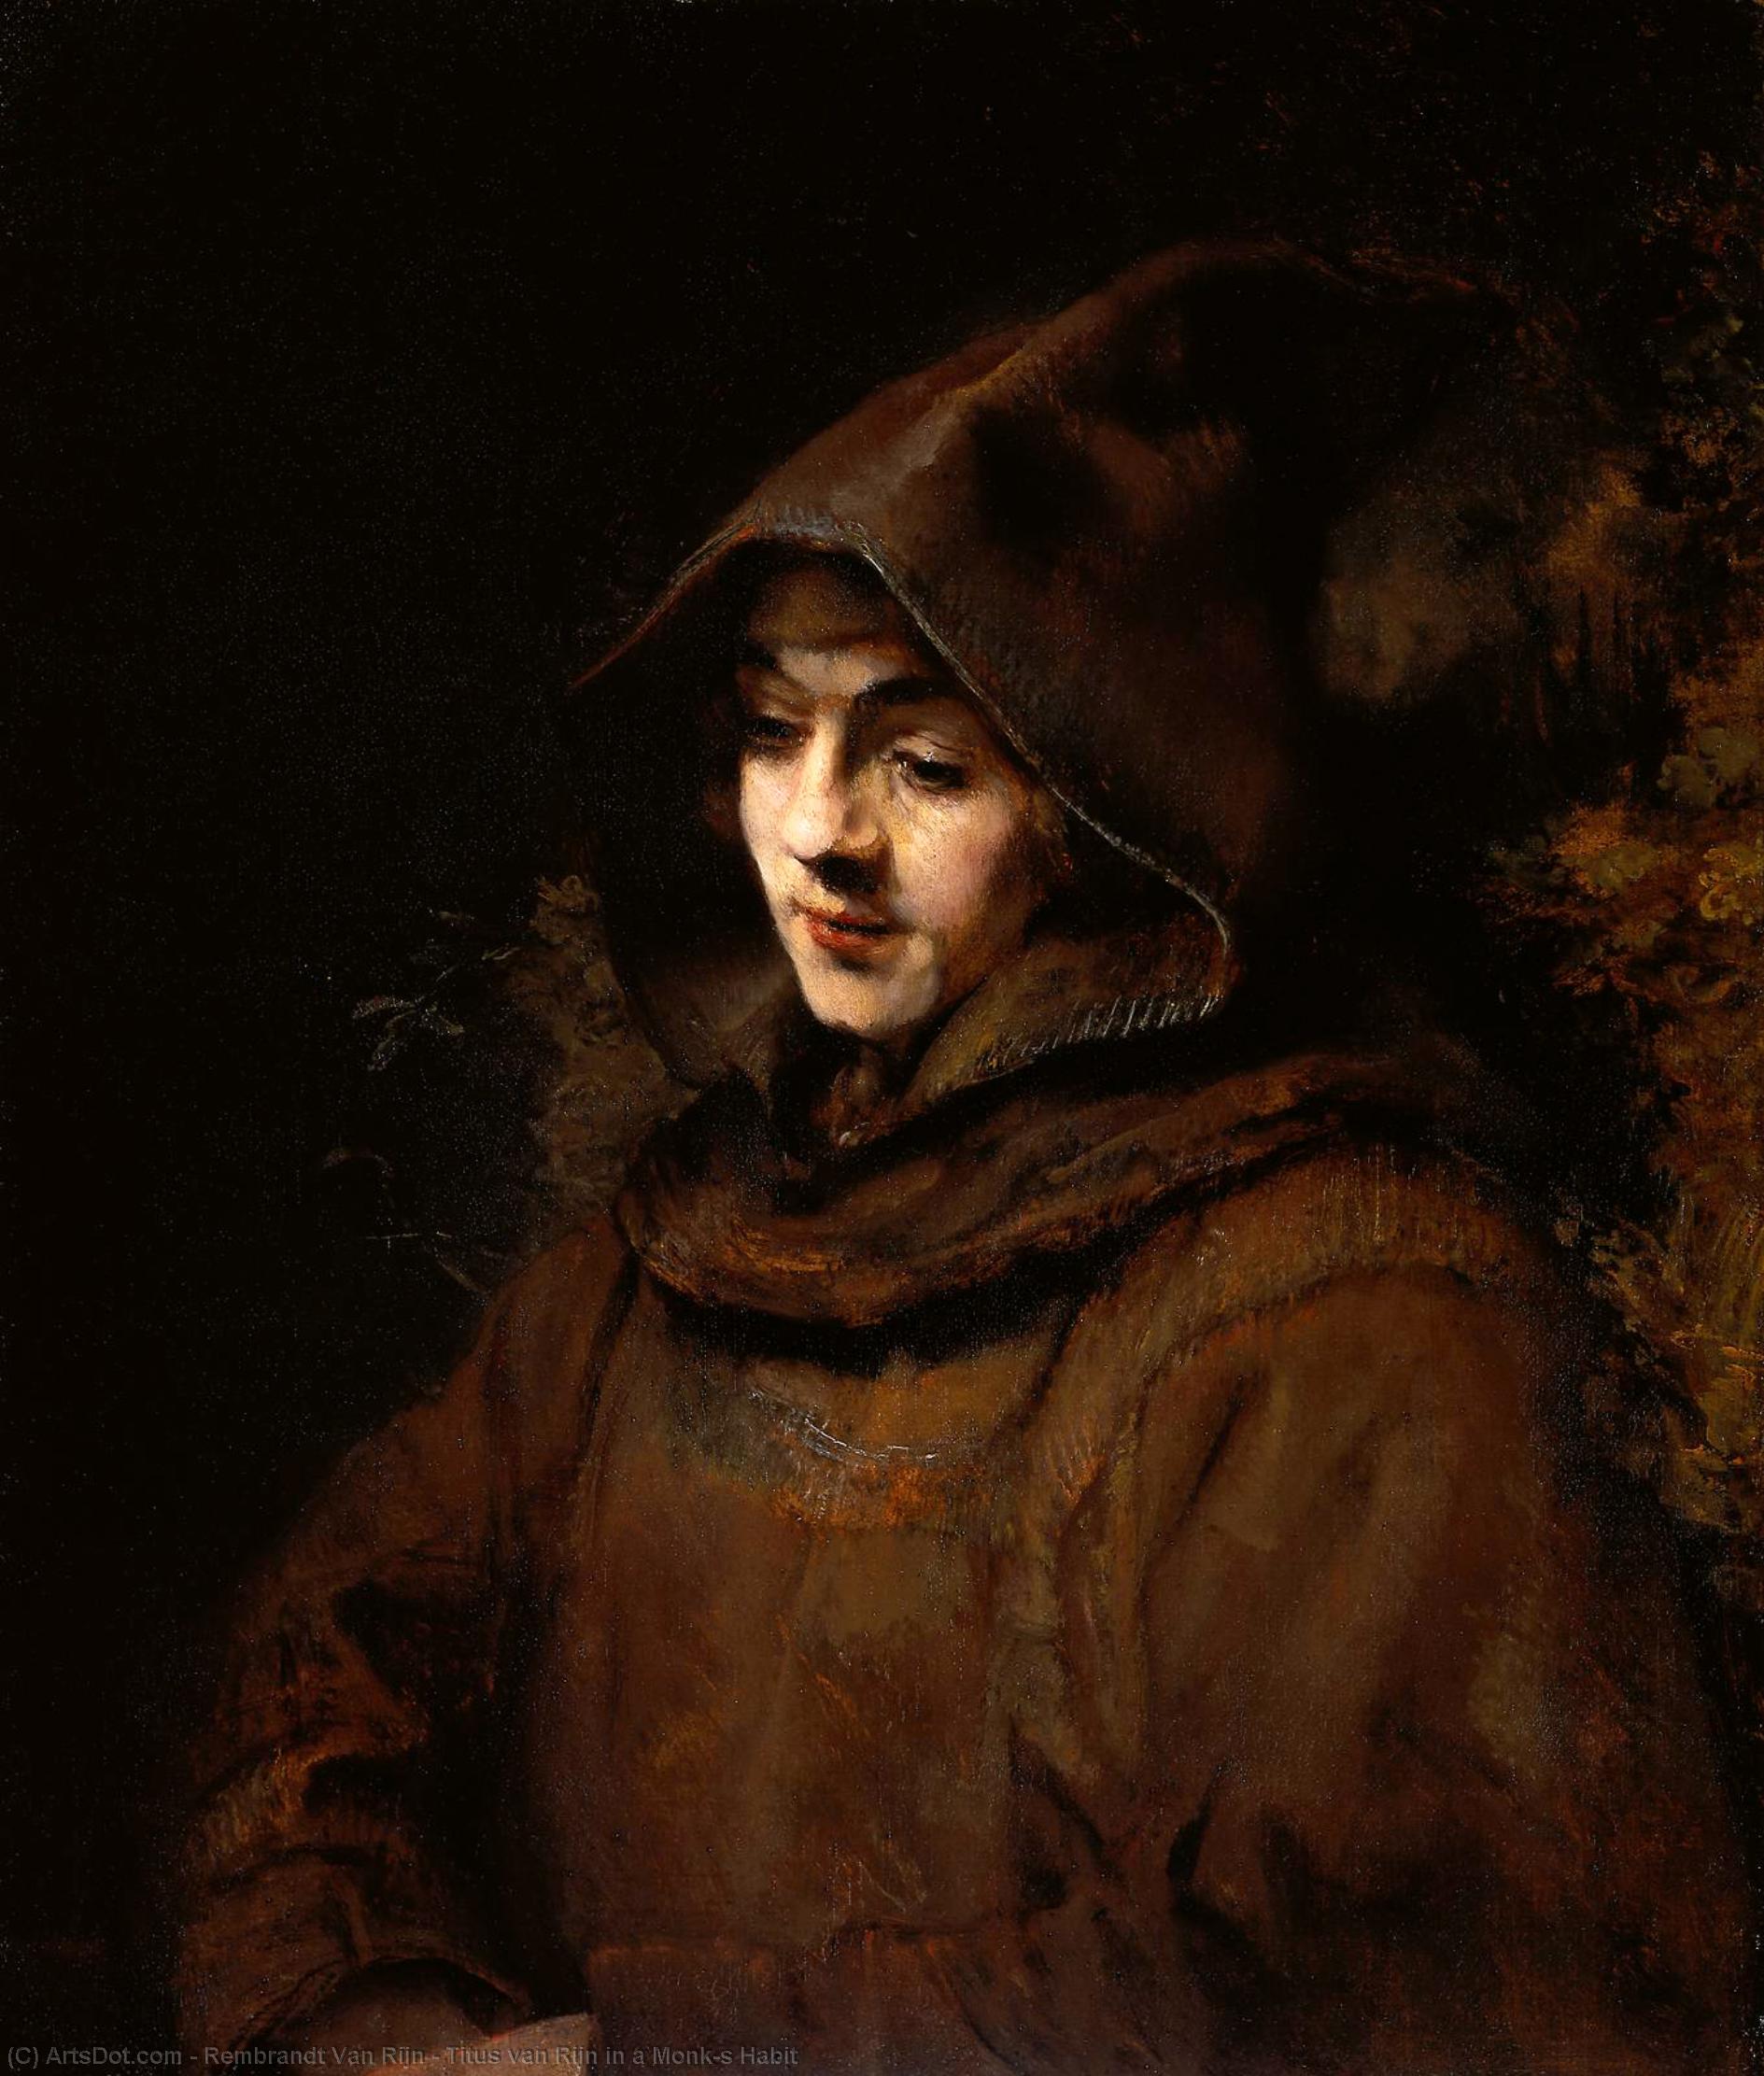 Wikioo.org - The Encyclopedia of Fine Arts - Painting, Artwork by Rembrandt Van Rijn - Titus van Rijn in a Monk's Habit